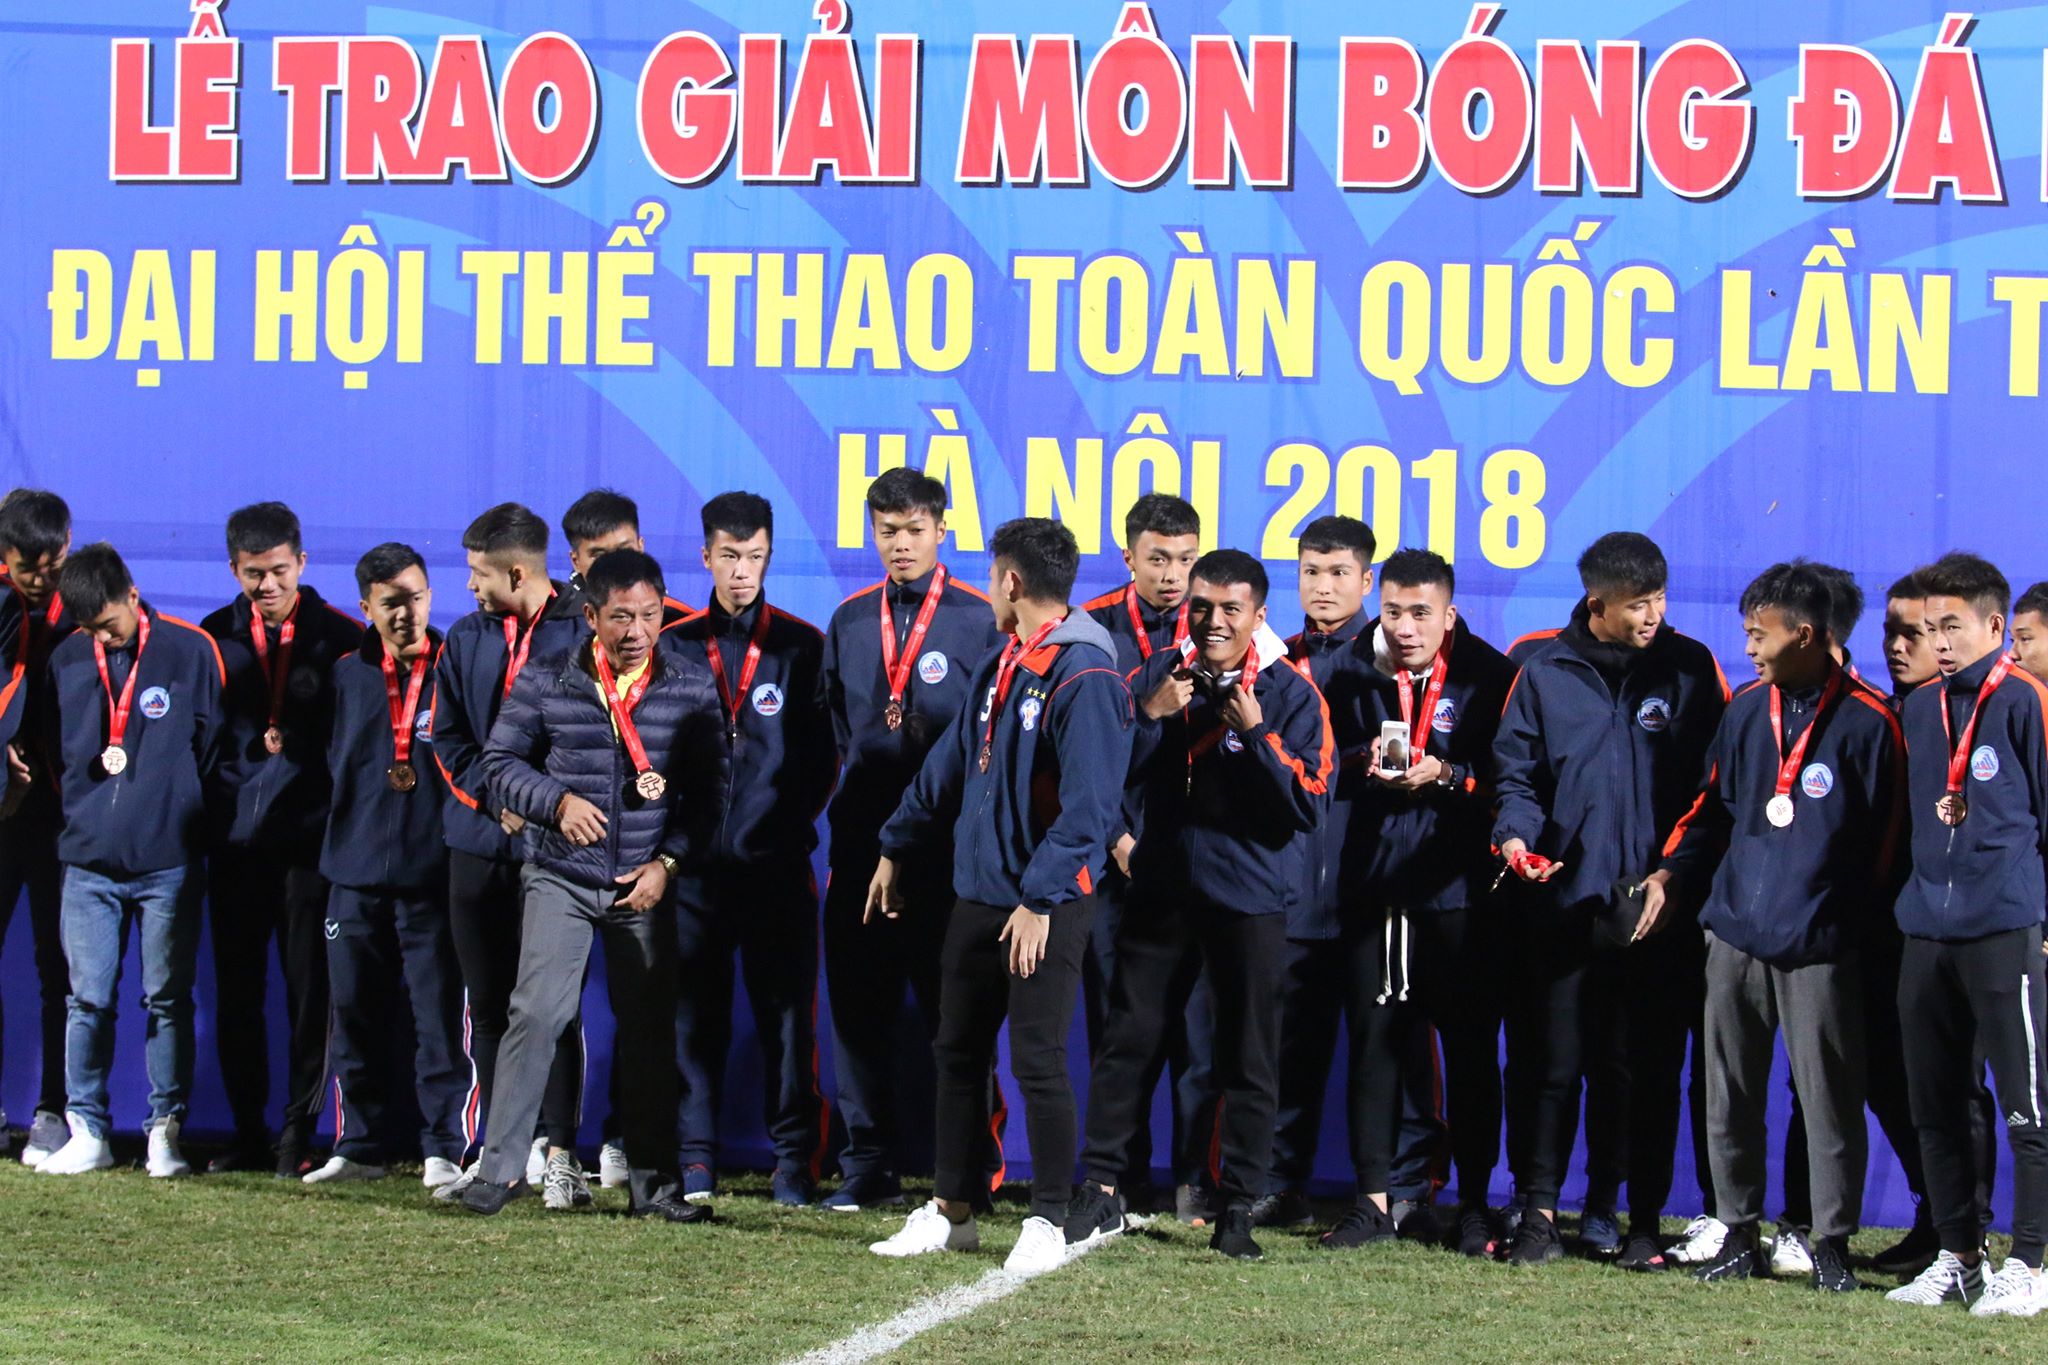 Chưa đá chung kết, Quang Hải, Đình Trọng đã nhận huy chương vàng - Bóng Đá